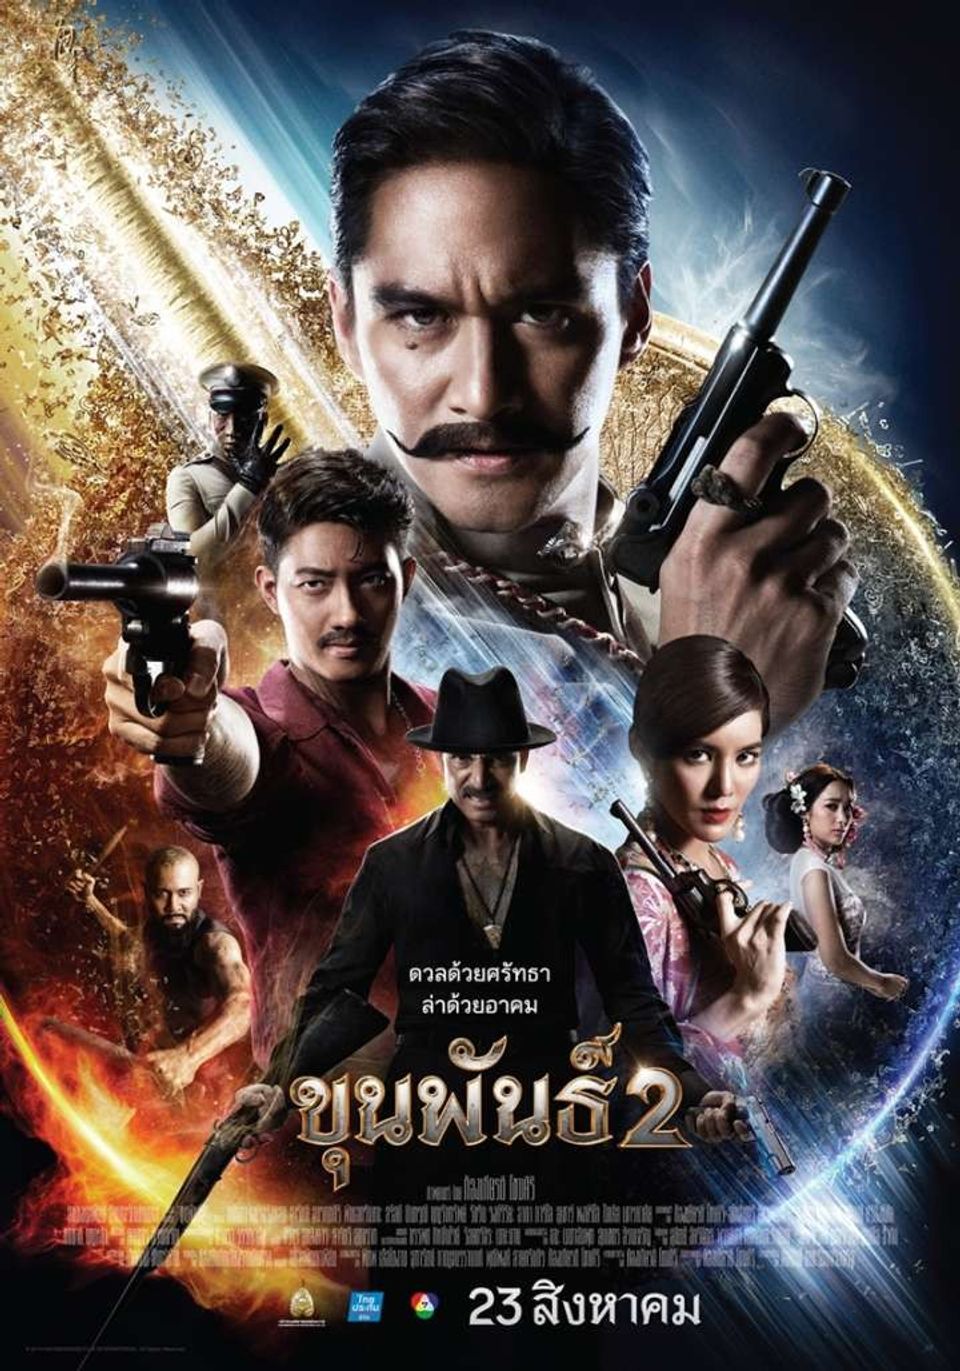 ภาพยนตร์ไทย “ขุนพันธ์ 2”